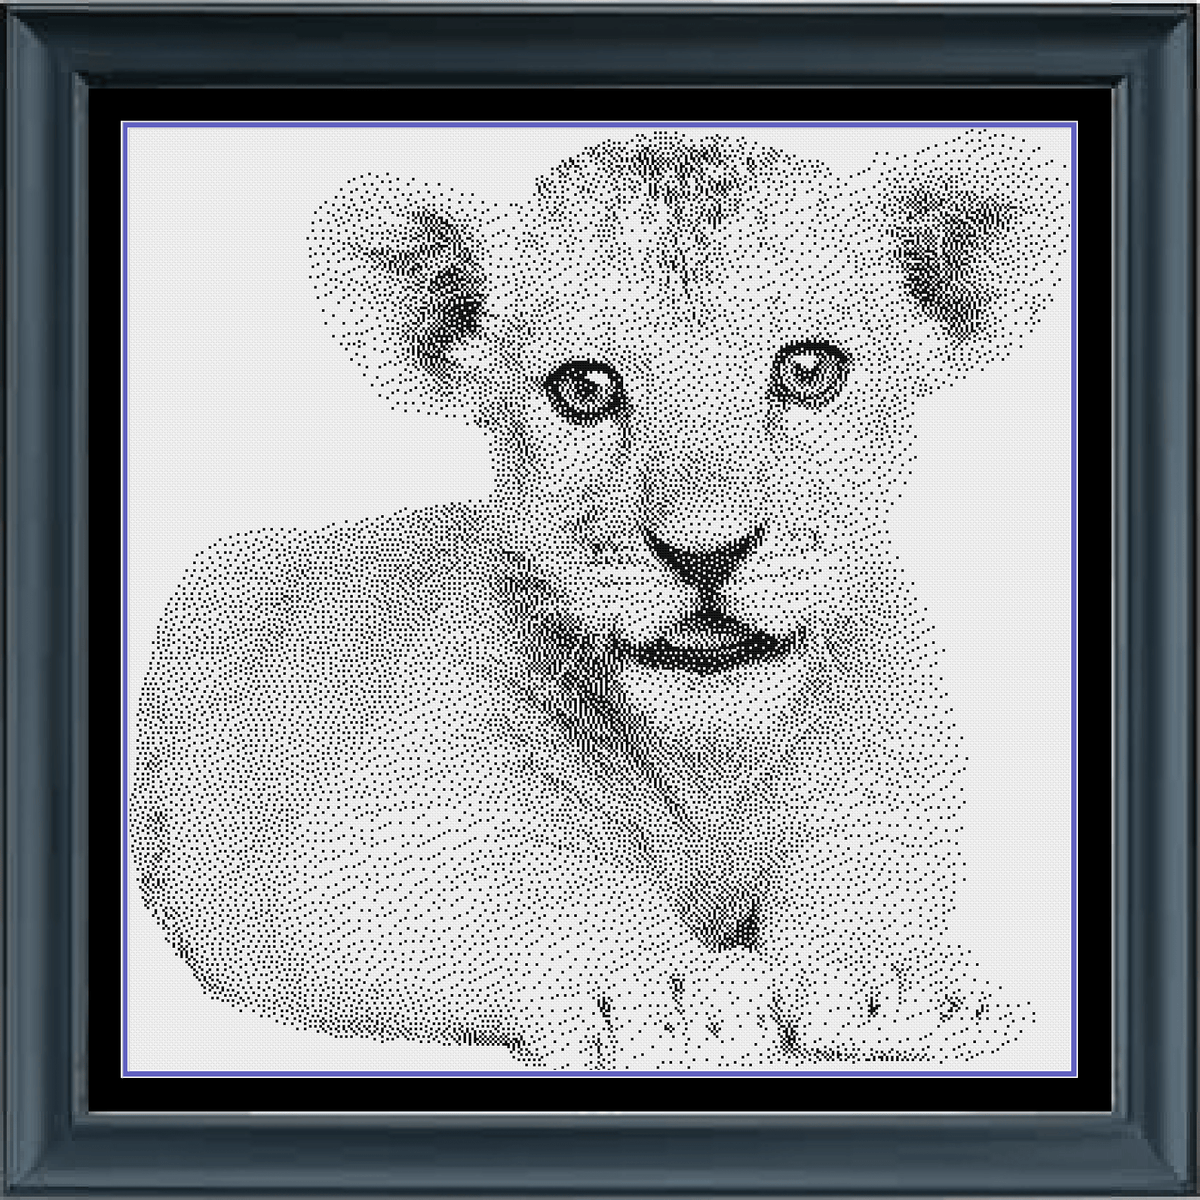 Stitching Jules Design Cross Stitch Pattern Instant PDF Download - $10 Lion Cub Cross Stitch Pattern | Baby Animal Cross Stitch Pattern | Blackwork | Instant PDF Download And Physical Pattern Options